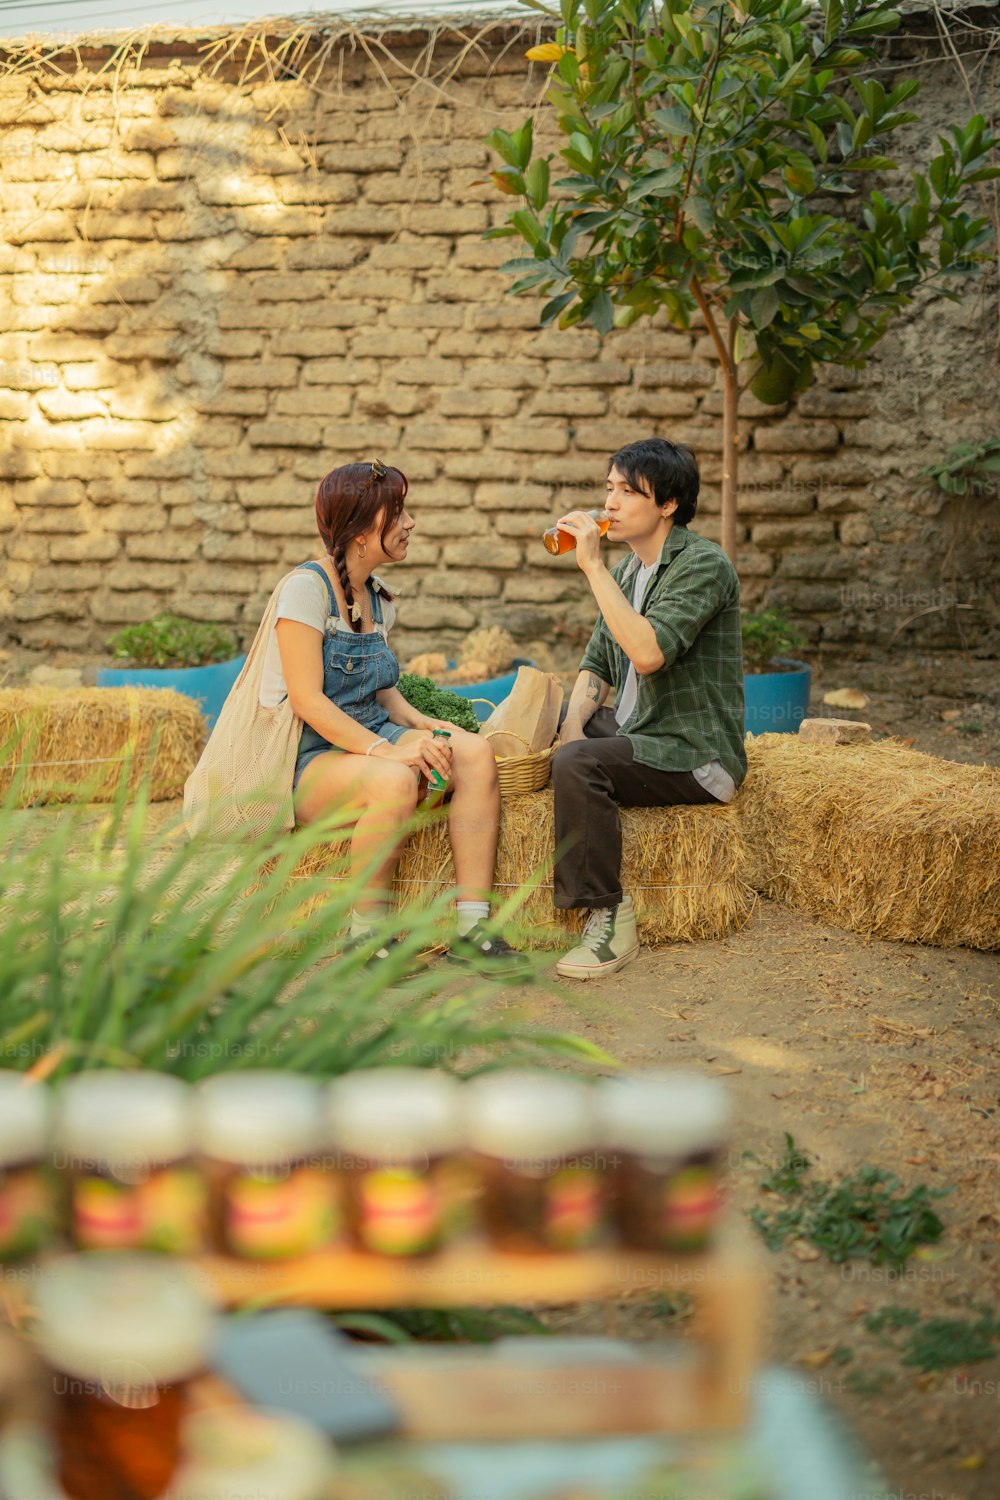 Un hombre y una mujer sentados en una paca de heno